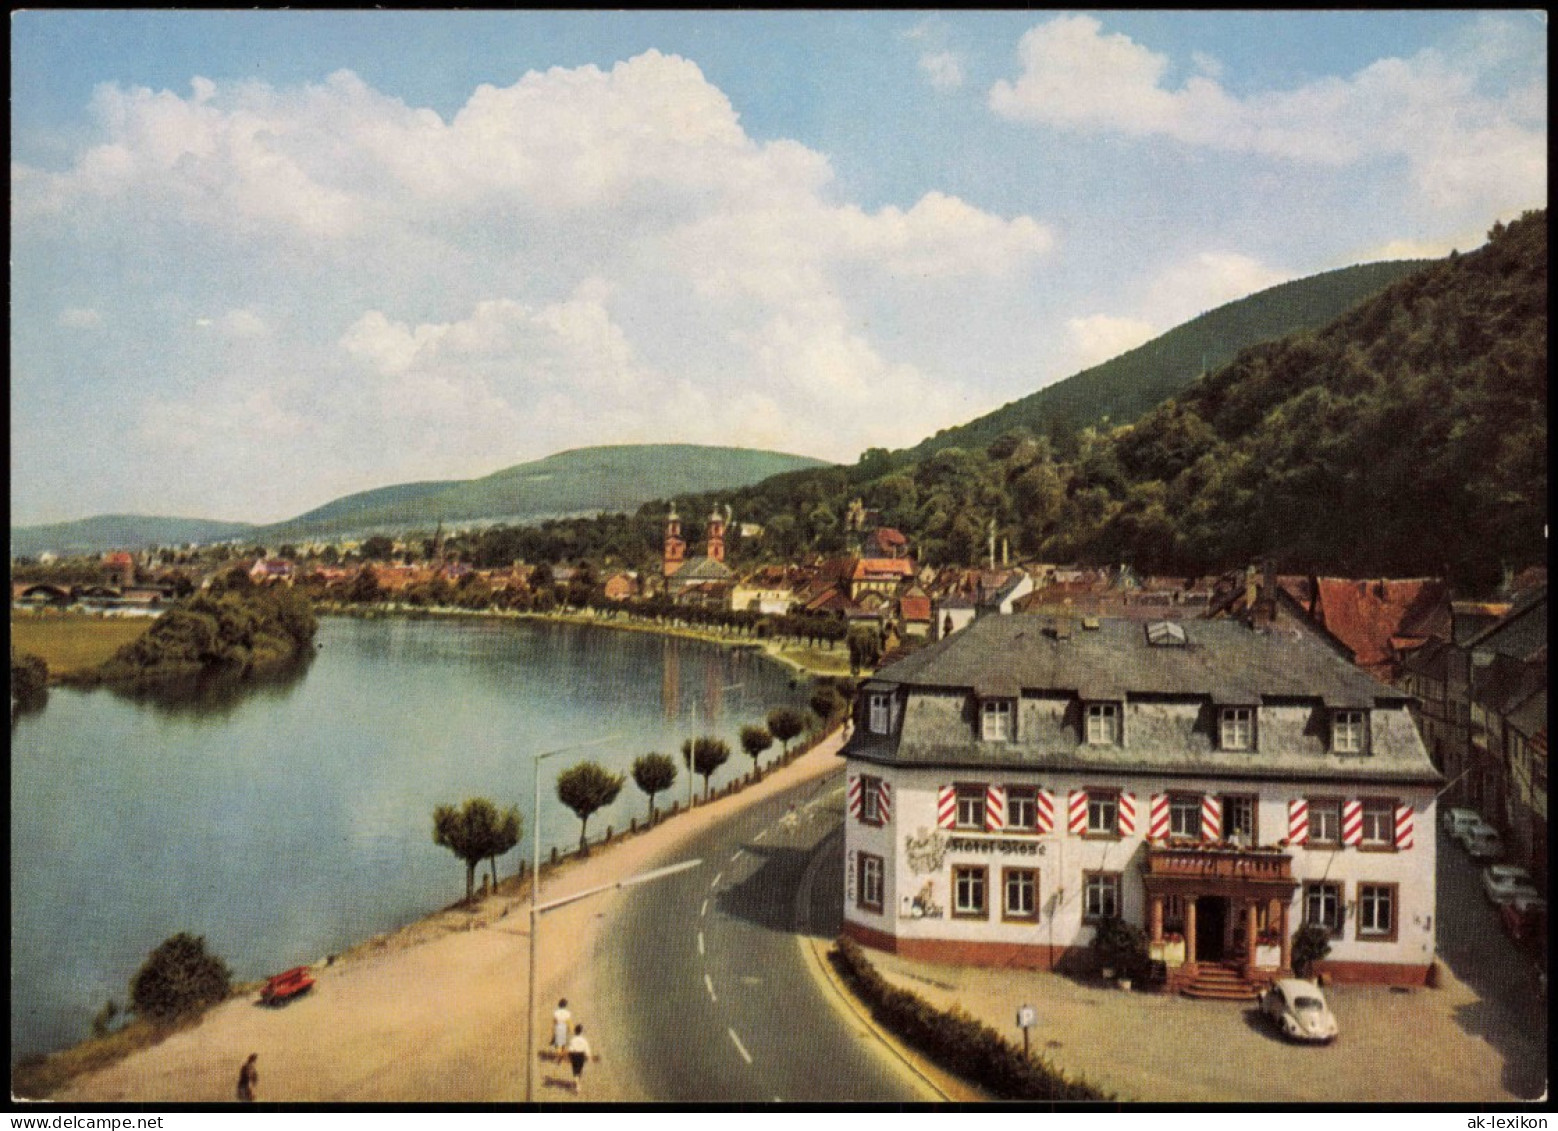 Miltenberg (Main) Panorama-Ansicht, Main-Schleife, VW Käfer Vor Hotel 1965 - Miltenberg A. Main